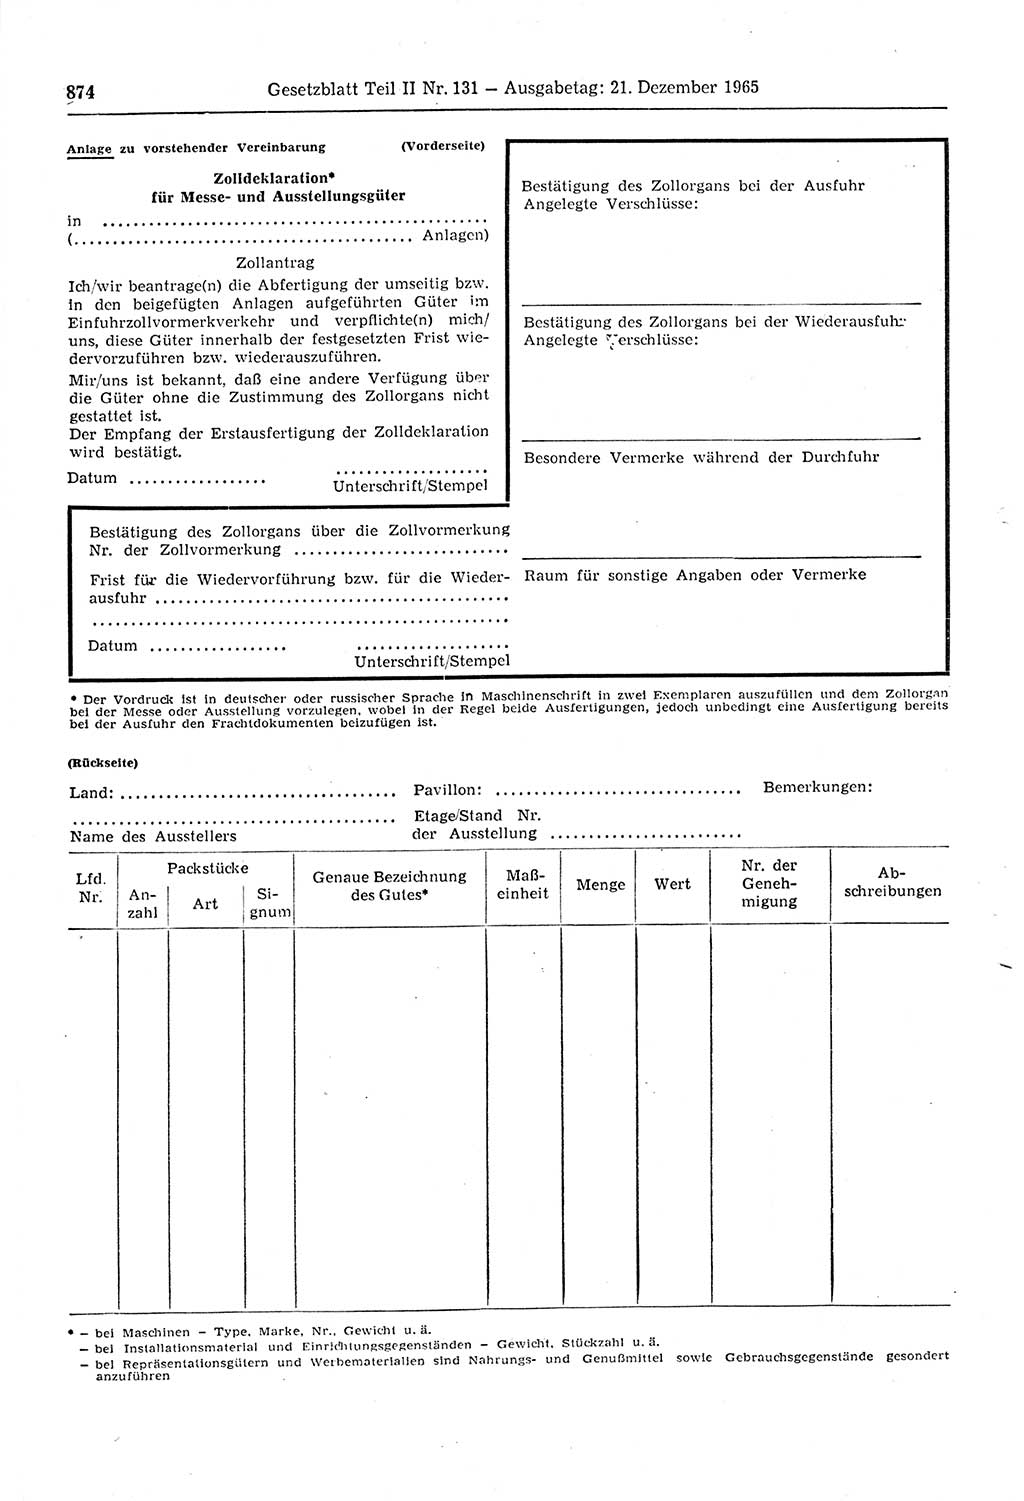 Gesetzblatt (GBl.) der Deutschen Demokratischen Republik (DDR) Teil ⅠⅠ 1965, Seite 874 (GBl. DDR ⅠⅠ 1965, S. 874)